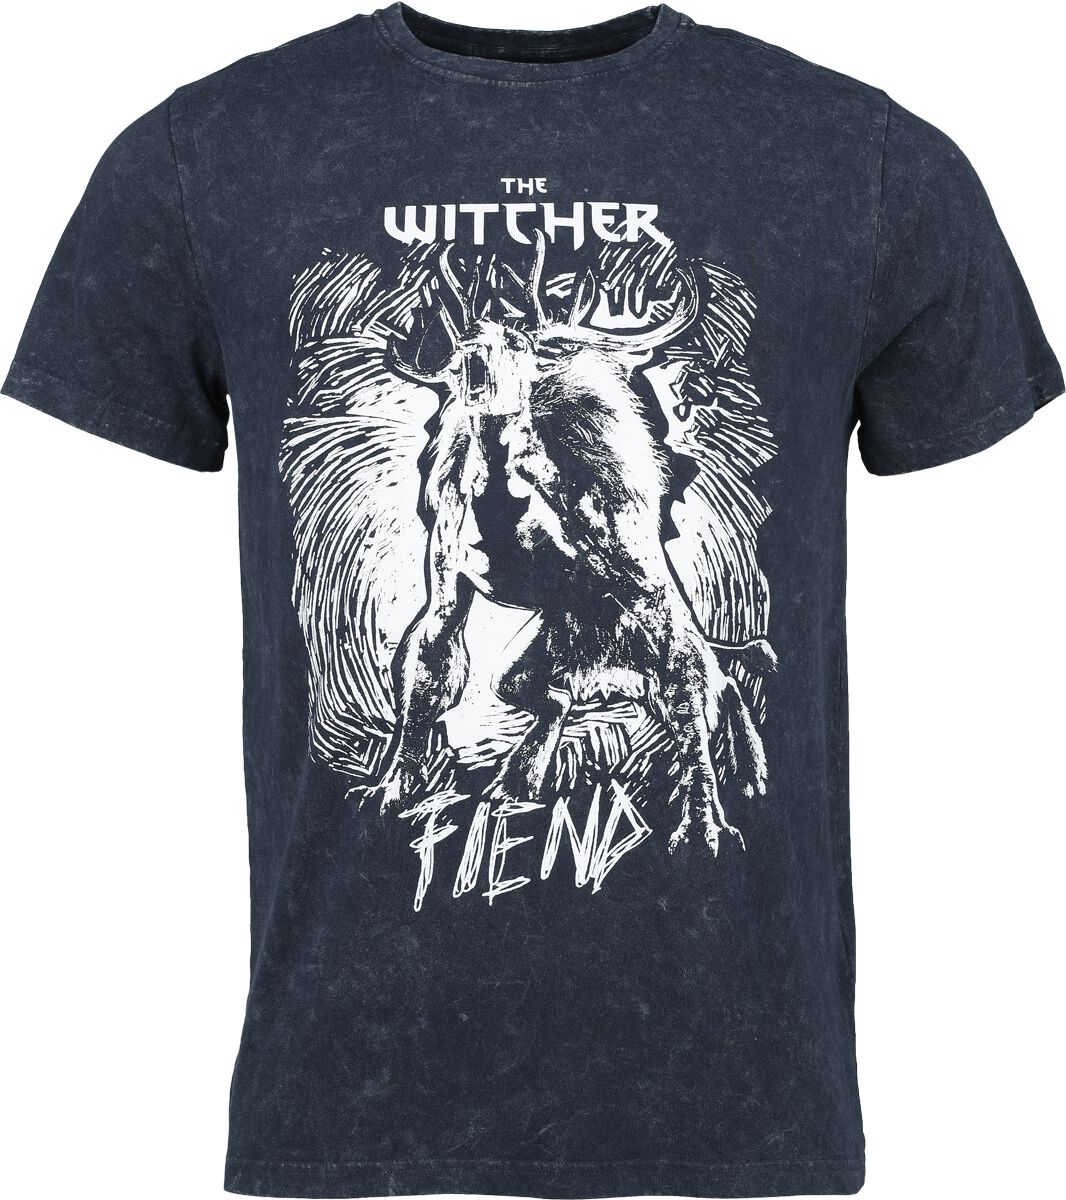 The Witcher Fiend T-Shirt blau in XL